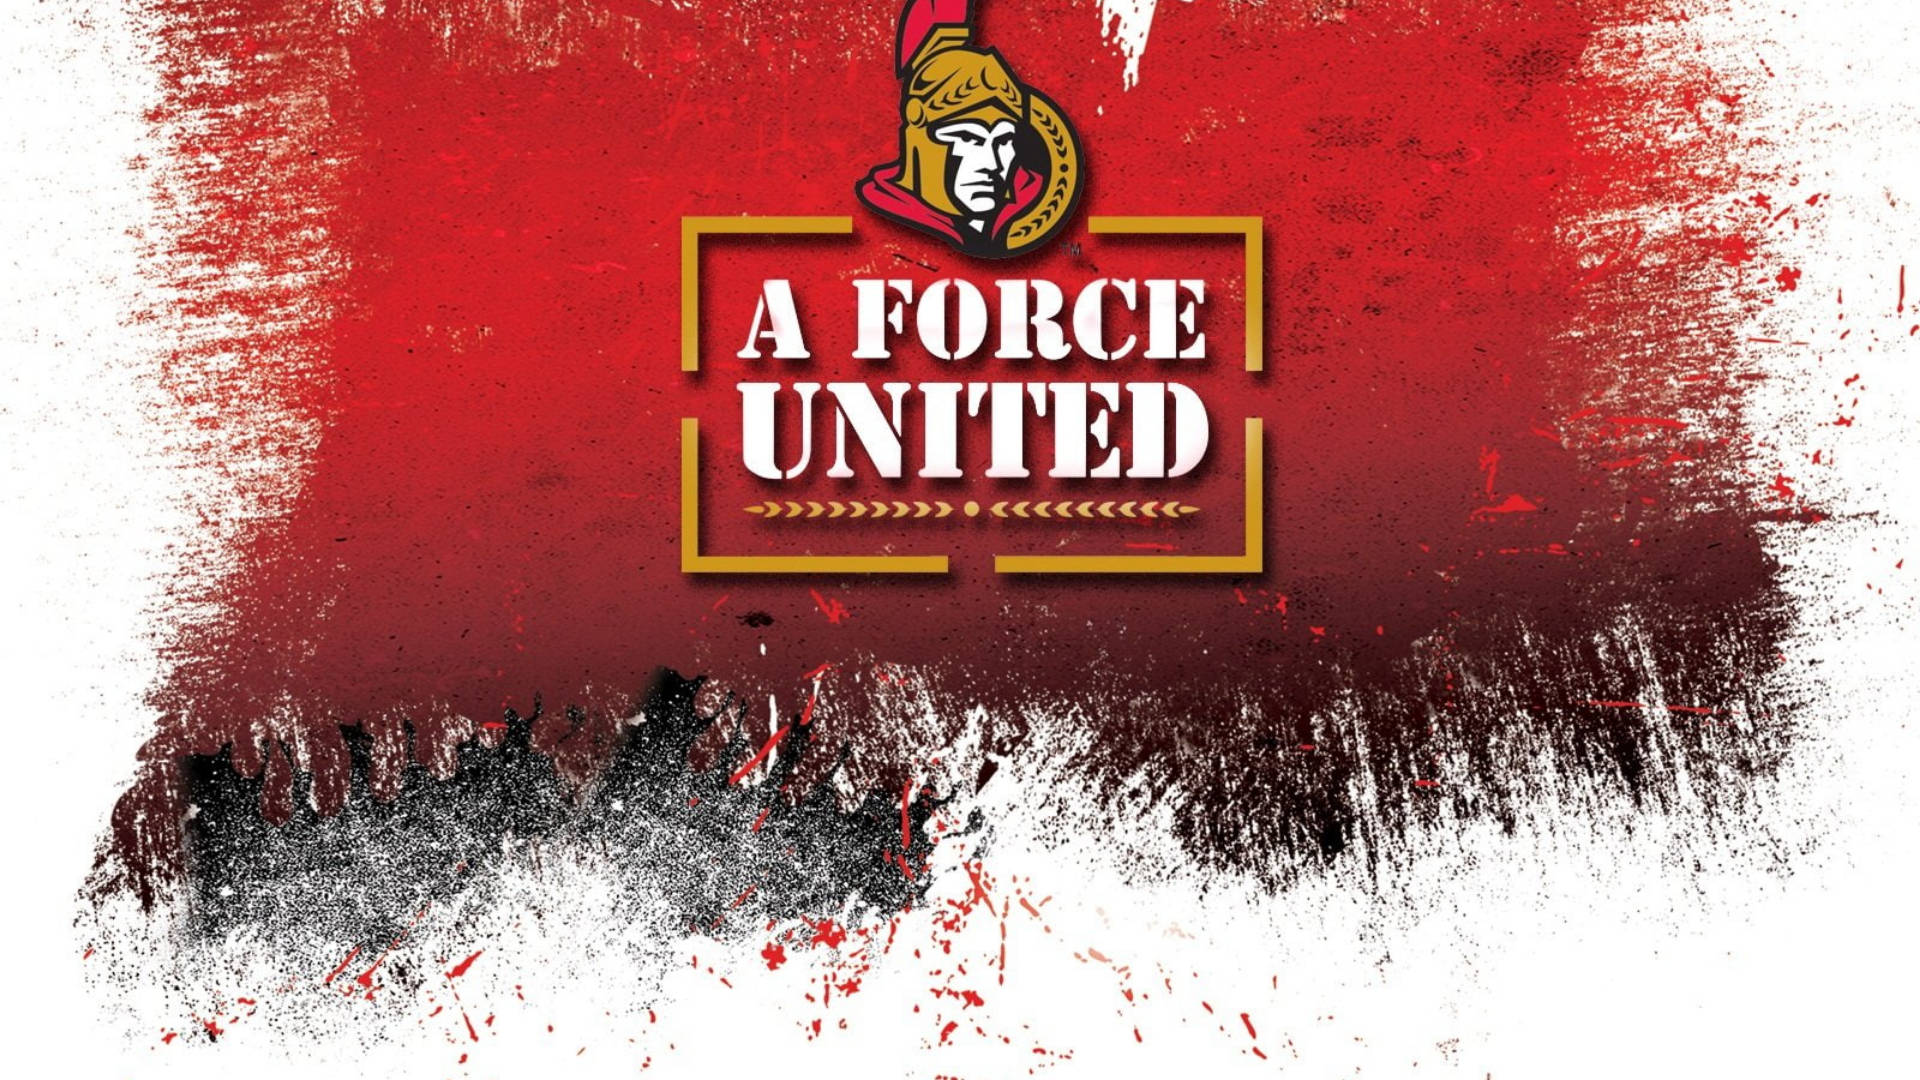 Ottawa Senators Force United